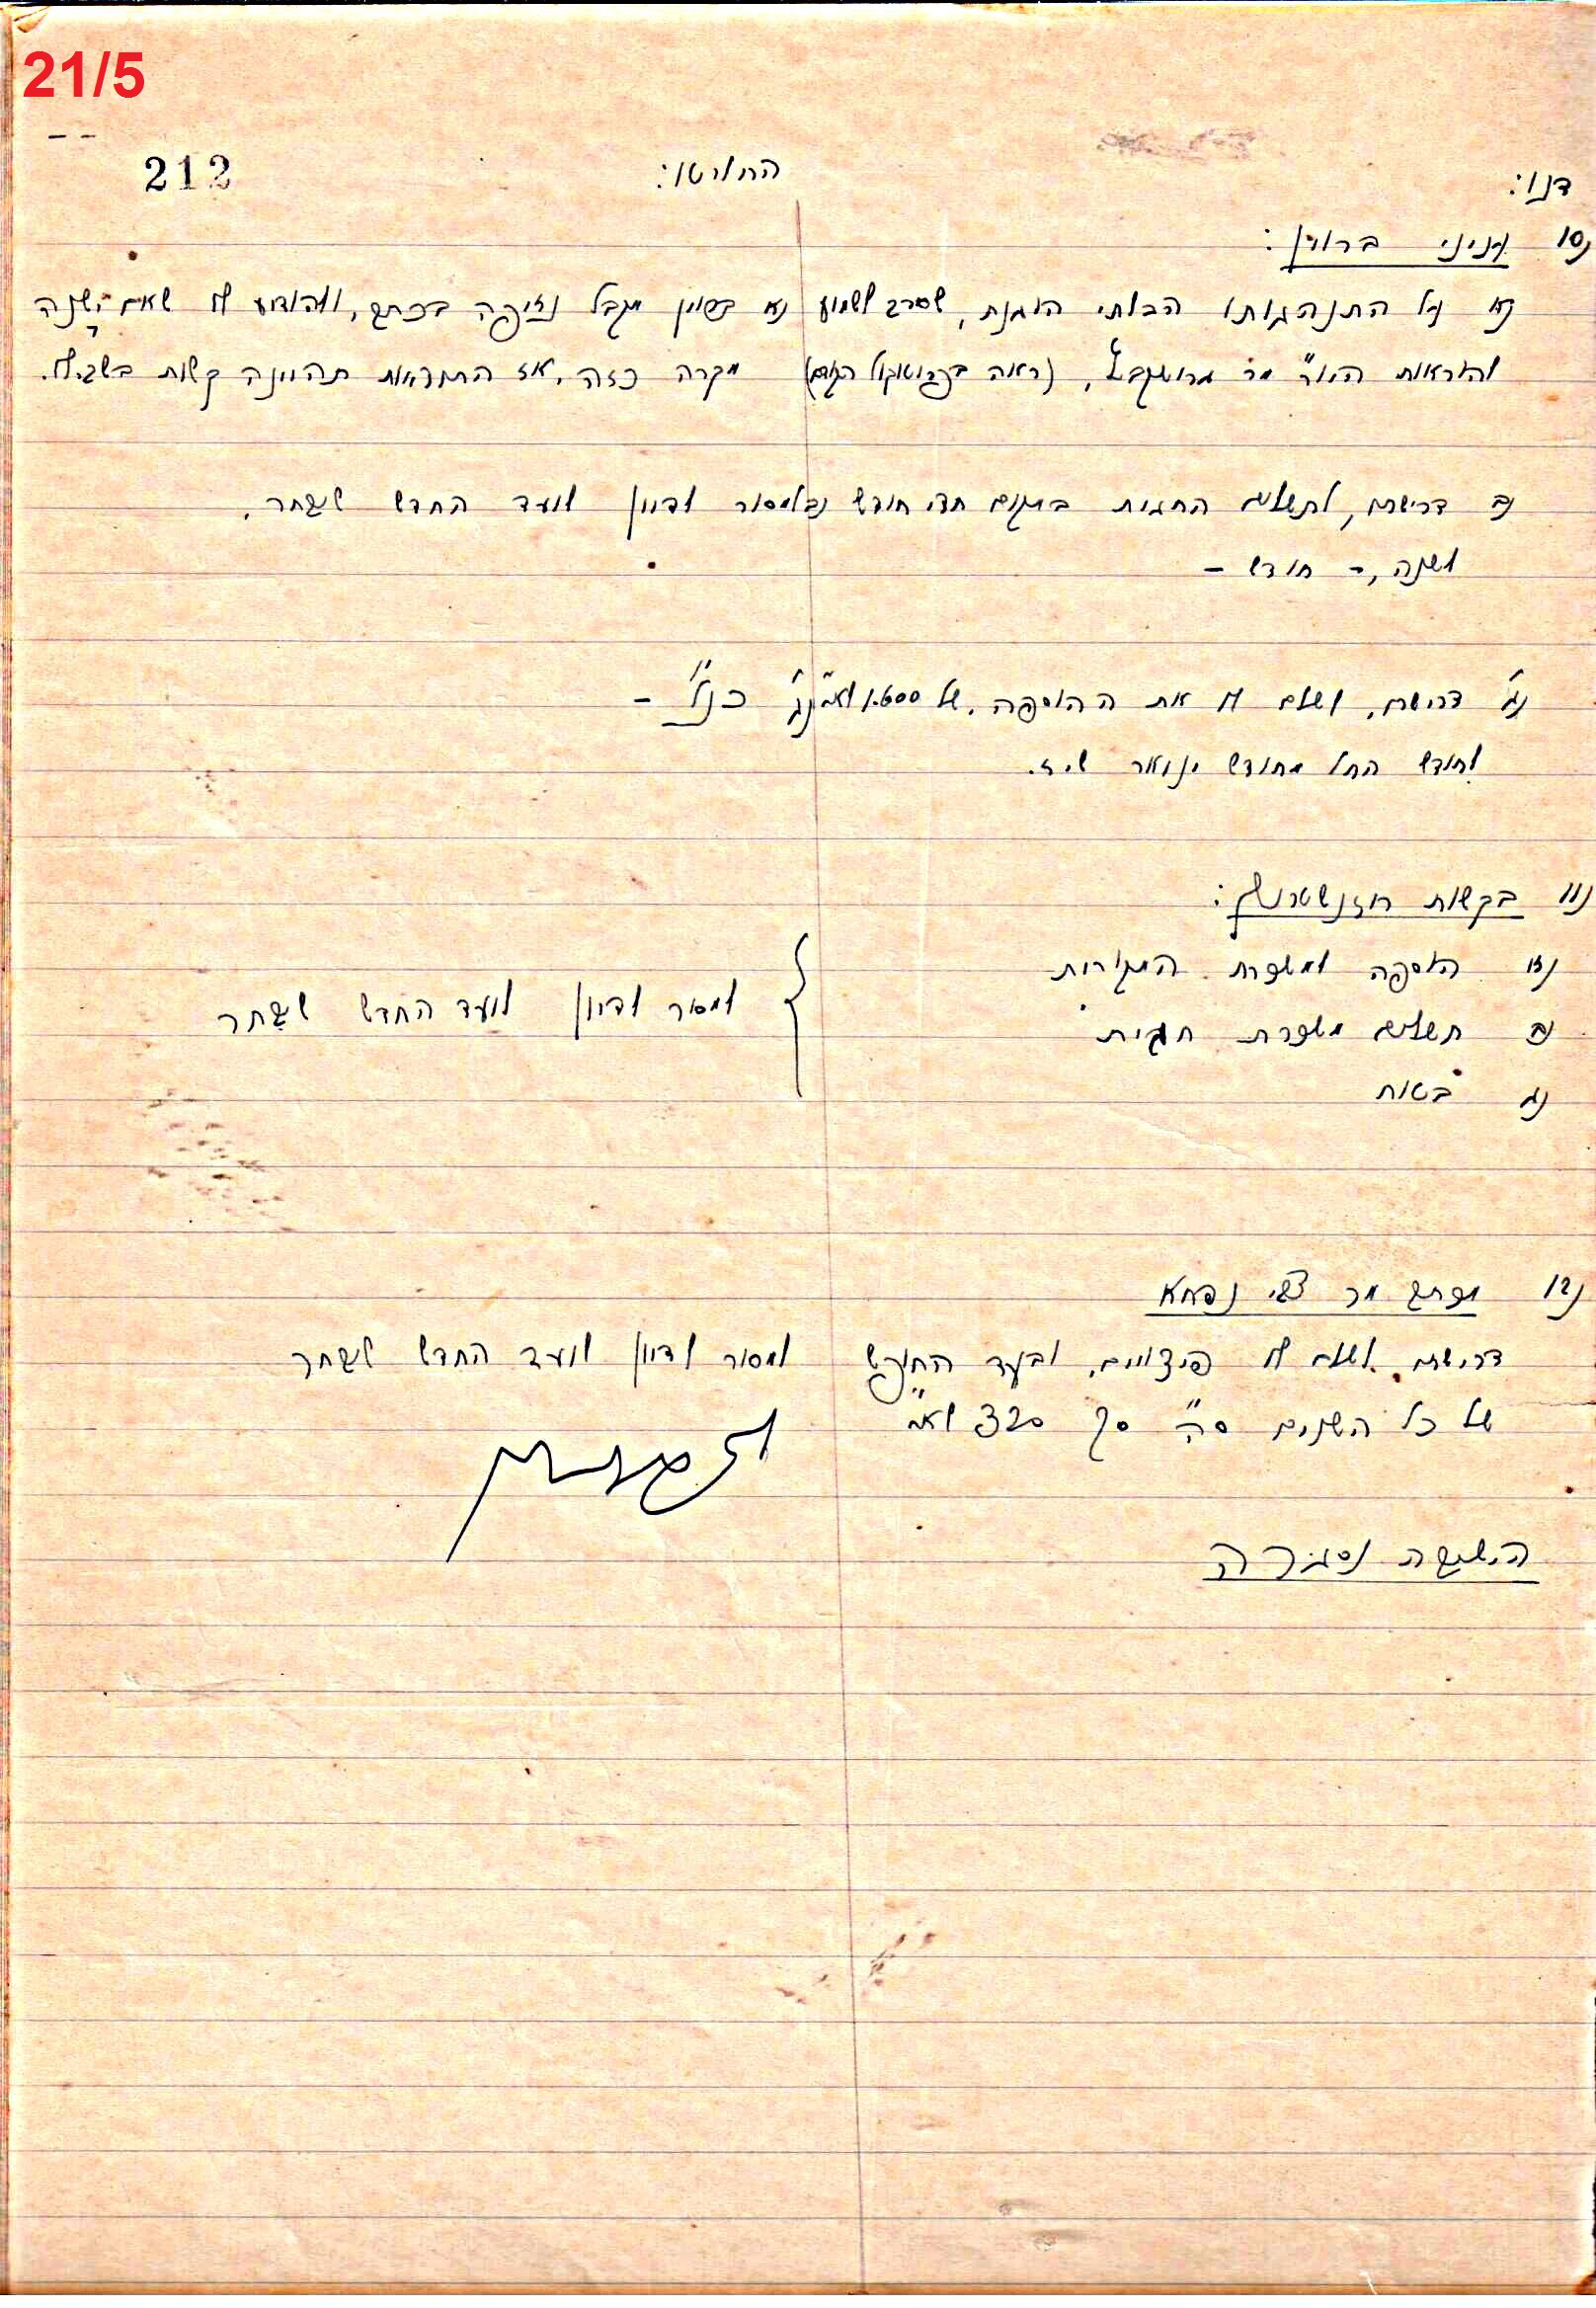 פרוטוקול 46 אגודה שיתופית – מועצה 6.1.44 – 12.5.40 by riki deri - Illustrated by  מוזיאון בית גרושקביץ / כרך 46 - Ourboox.com